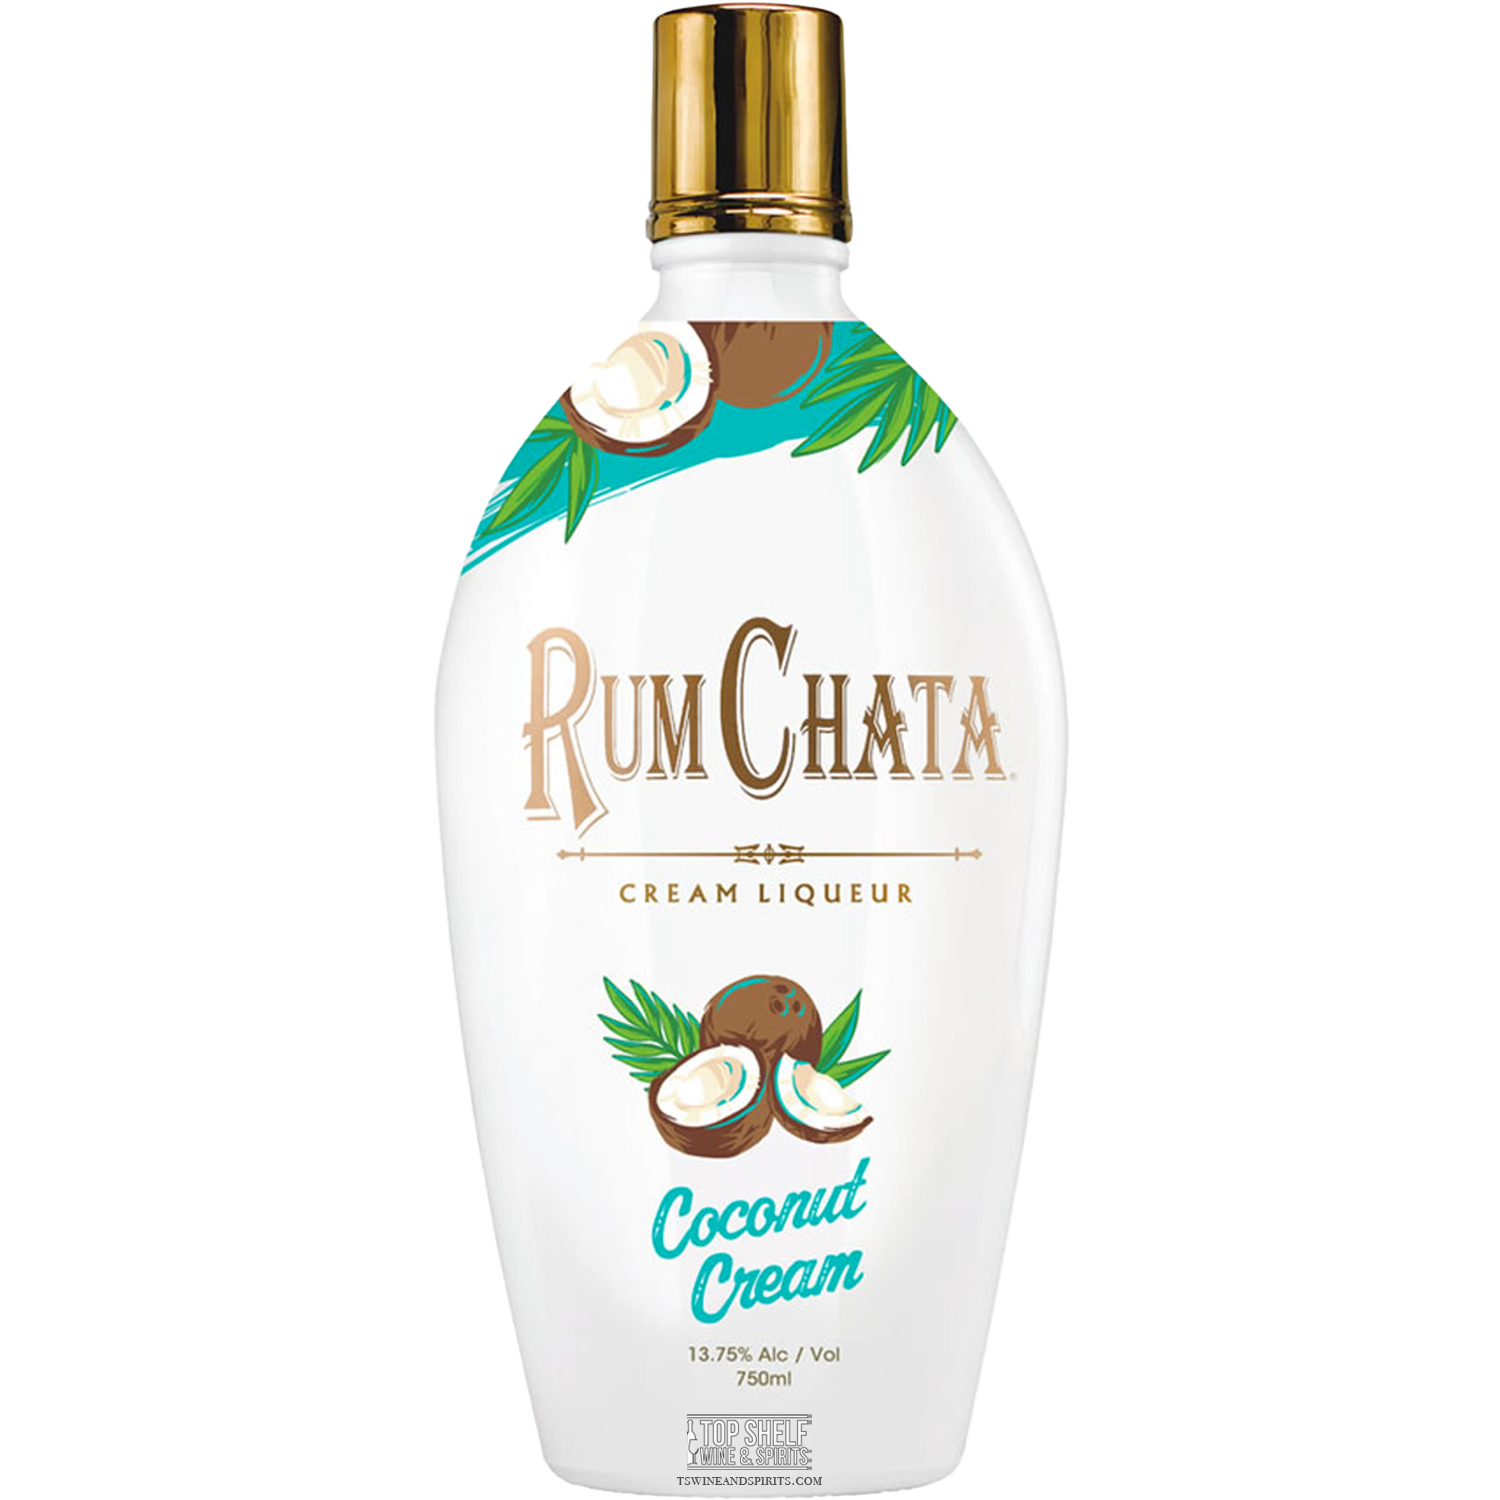 Rum Chata Coconut Cream